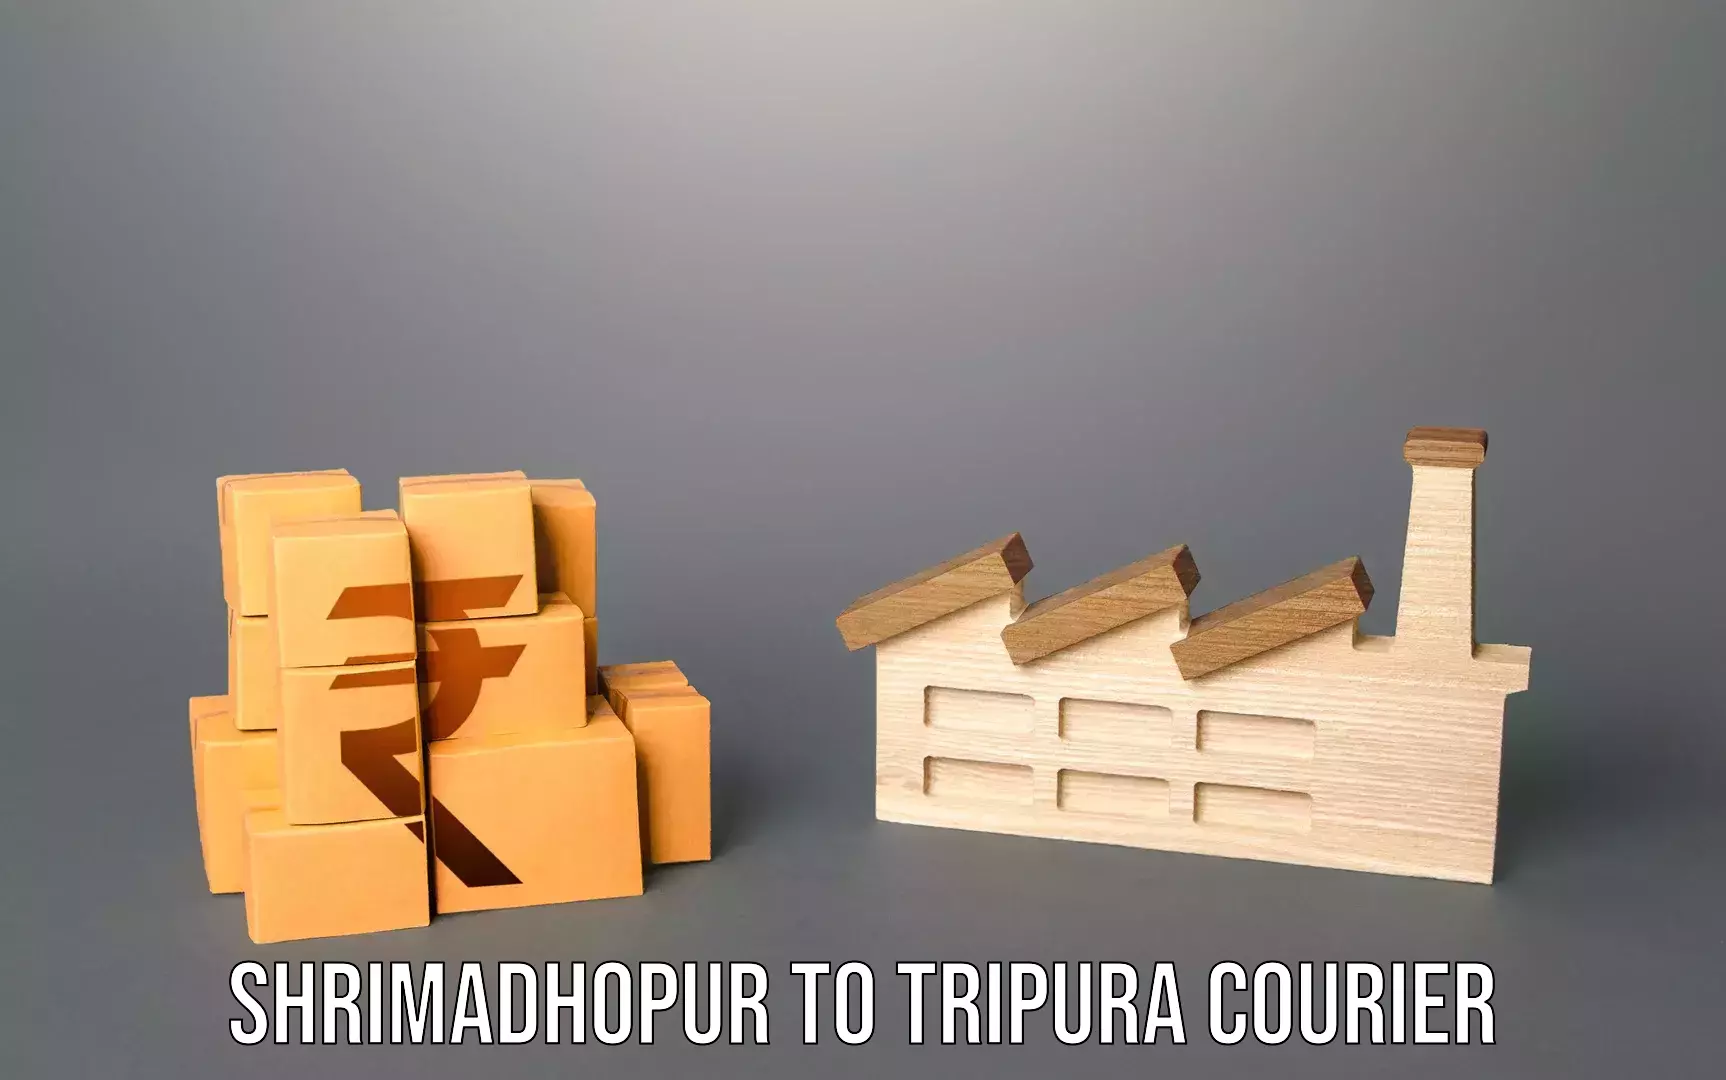 Luggage transit service Shrimadhopur to Tripura